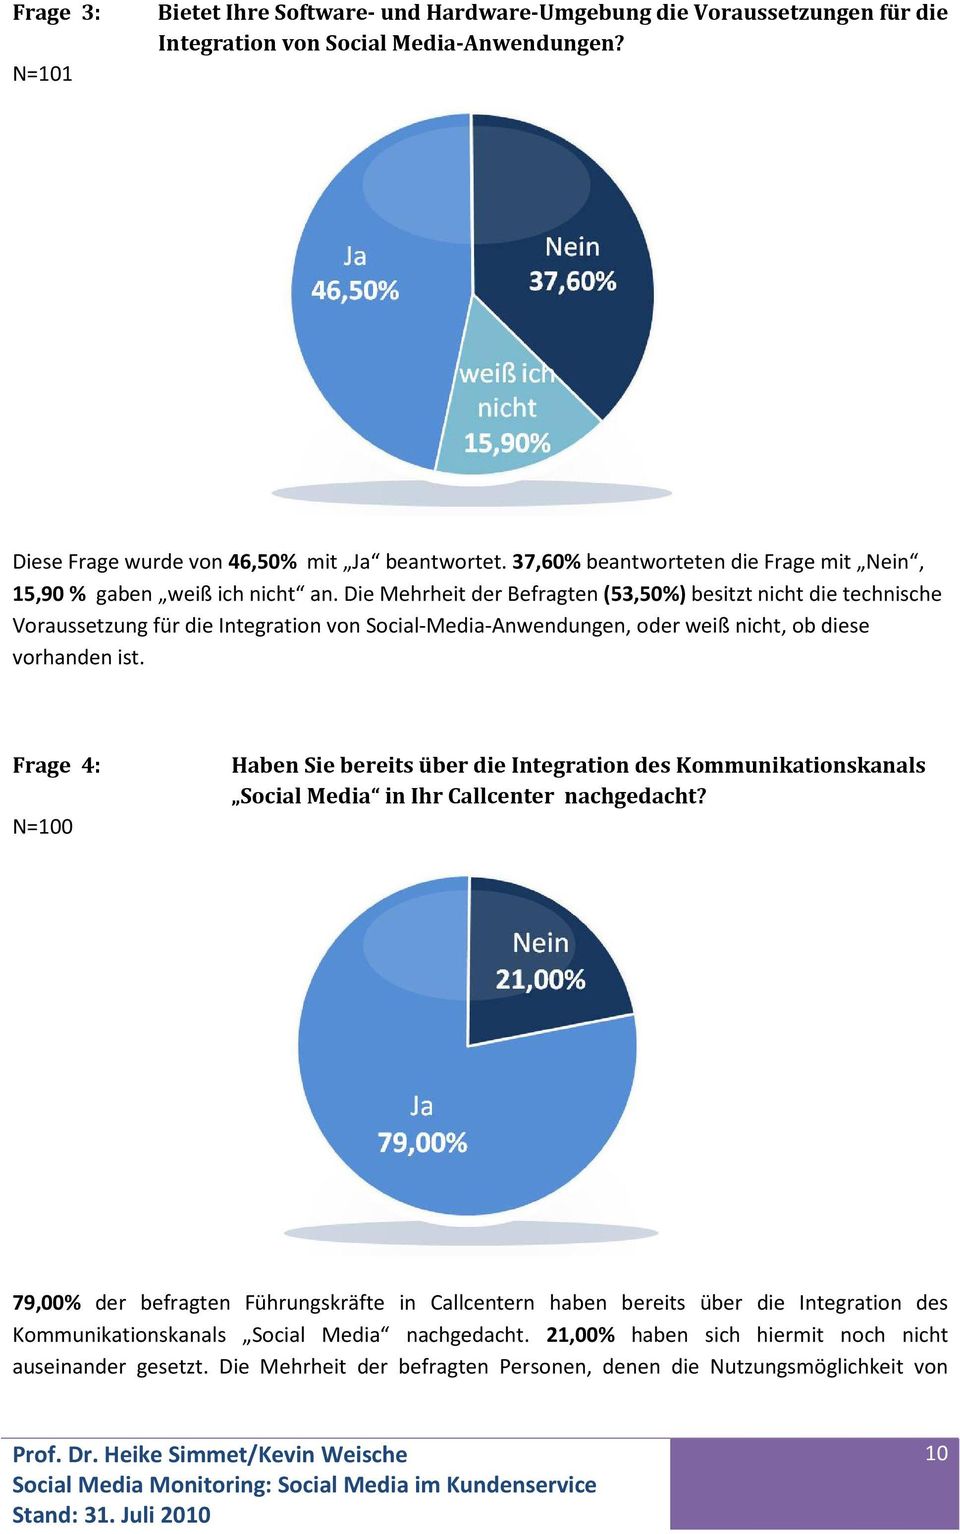 Die Mehrheit der Befragten (53,50%) besitzt nicht die technische Voraussetzung für die Integration von Social-Media-Anwendungen, oder weiß nicht, ob diese vorhanden ist.